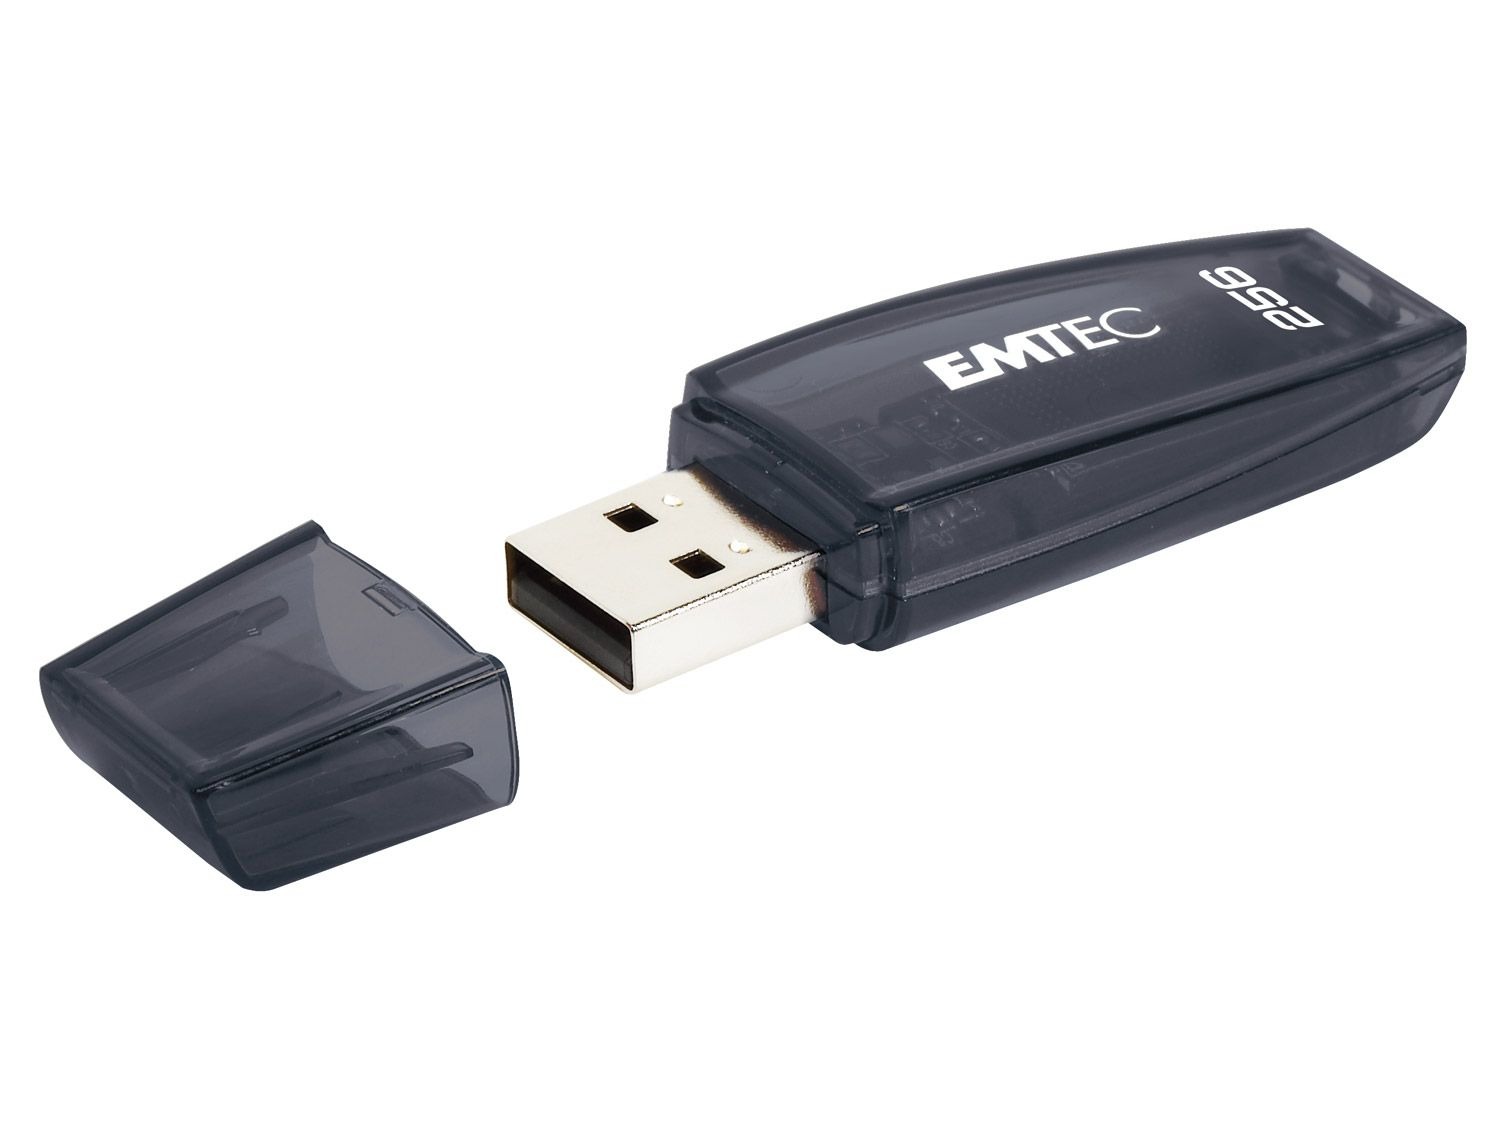 Emtec USB 3.0 Stick C410